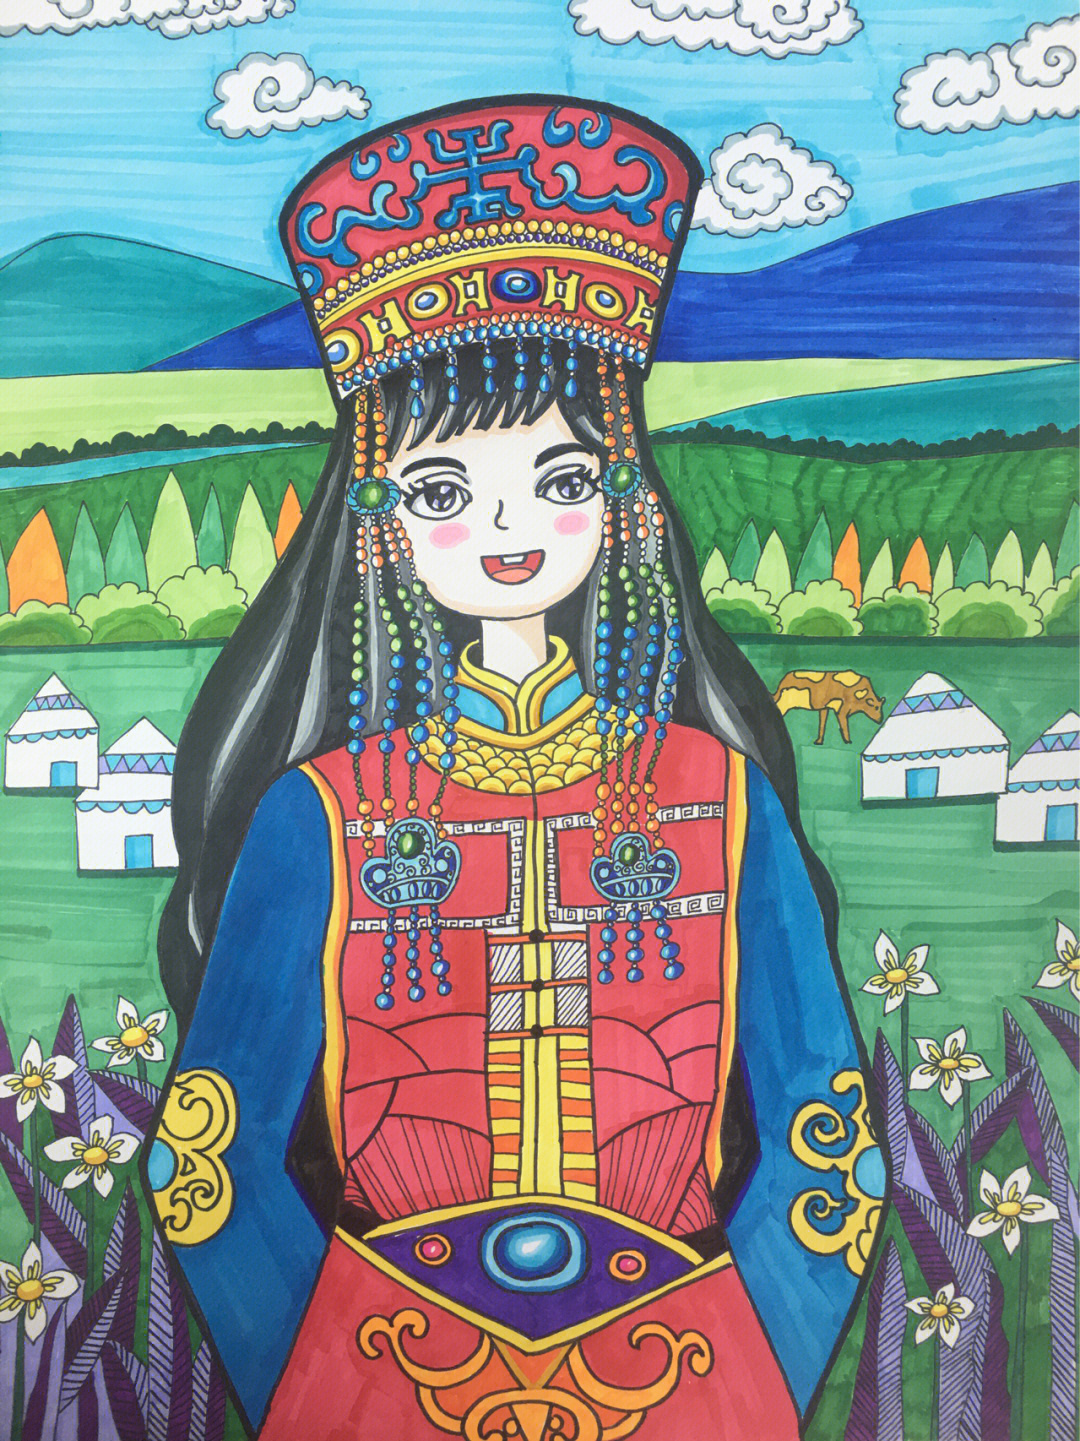 蒙古族人物简单绘画图片